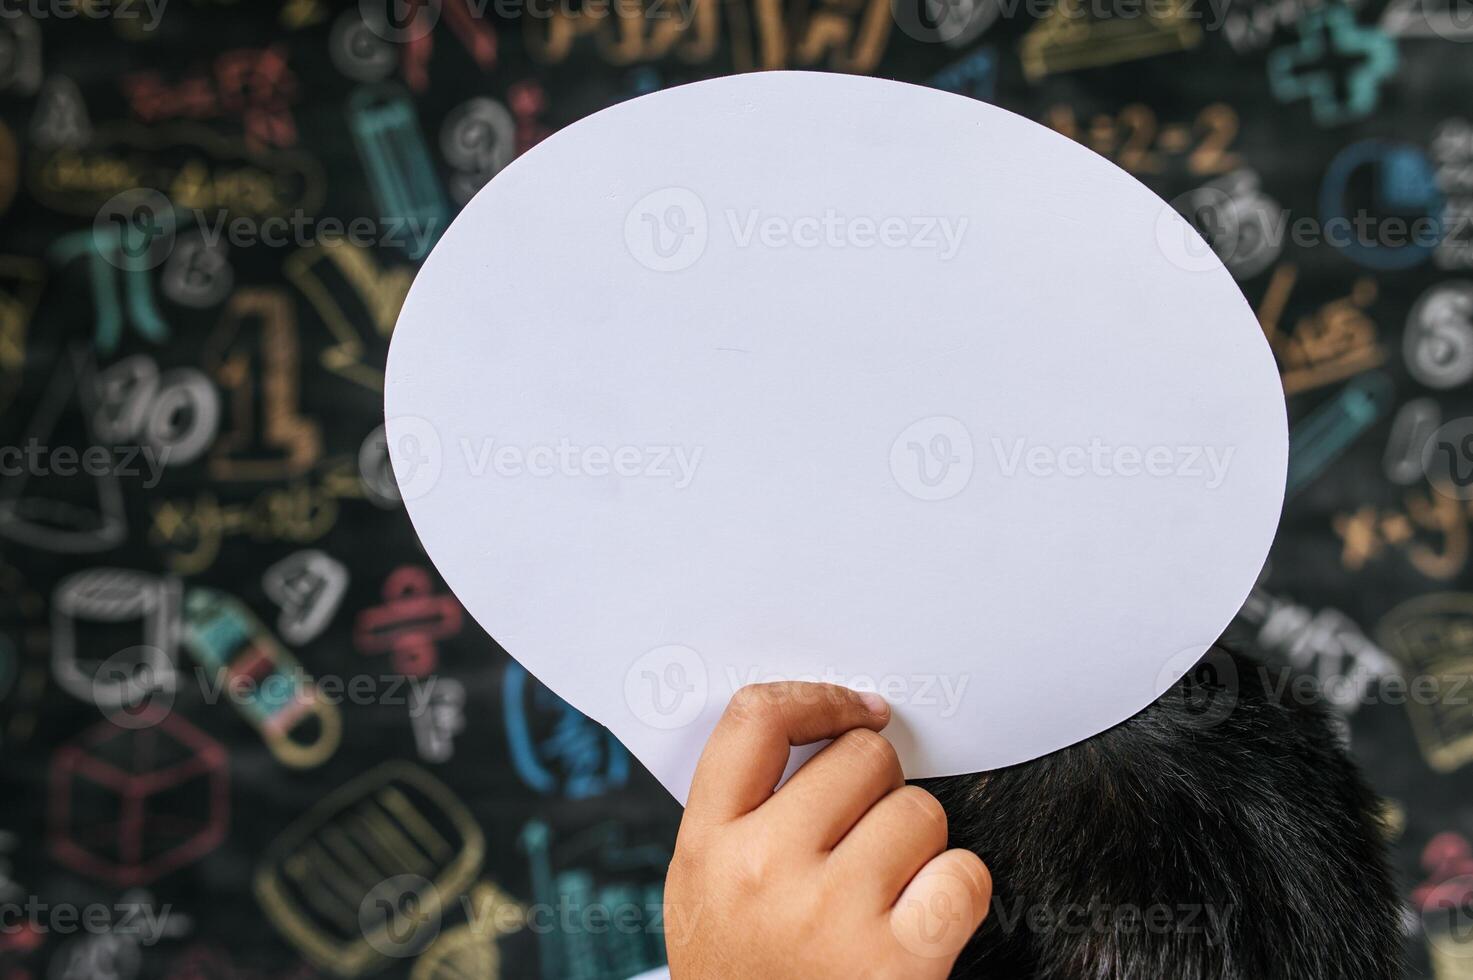 Kind spielt mit Sprechblase im Klassenzimmer foto